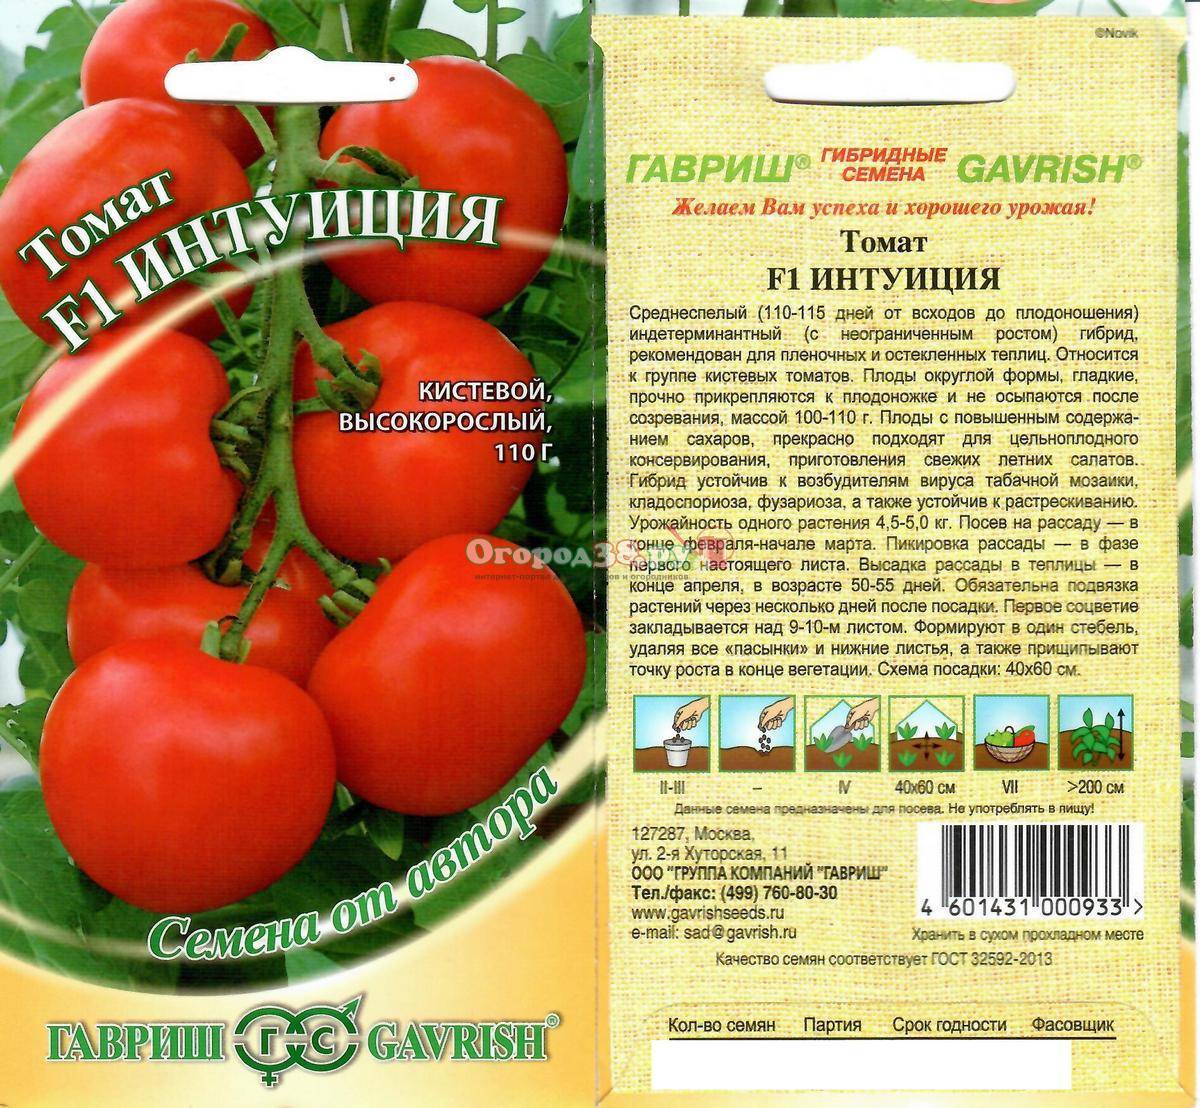 Выращивание томатов в открытом грунте: правильная технология - огород, сад, балкон
                                             - 25 февраля
                                             - 43647953445 - медиаплатформа миртесен